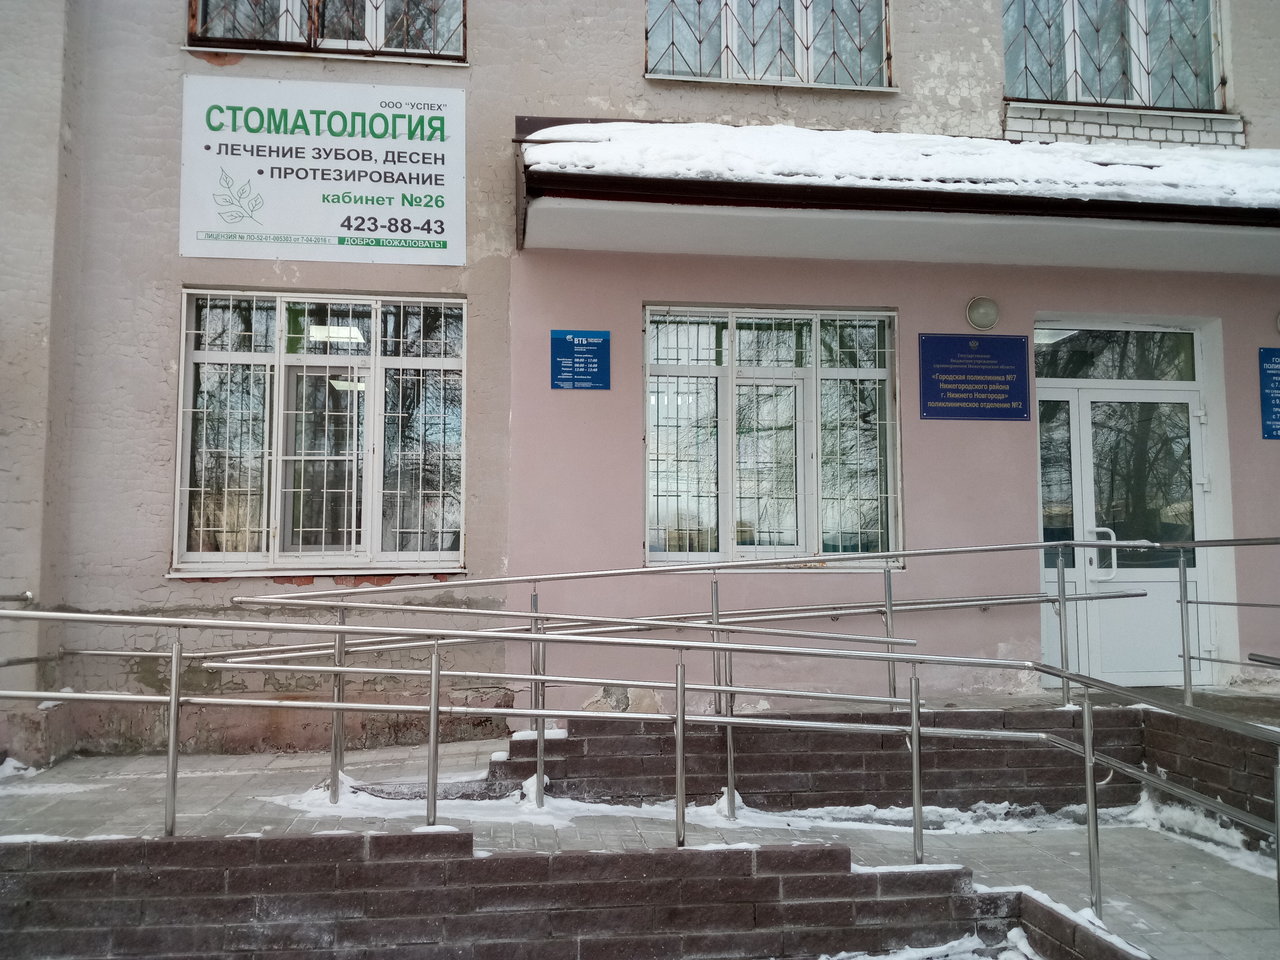 Стоматологическая клиника Успех, Нижний Новгород, ул. Тургенева, 26